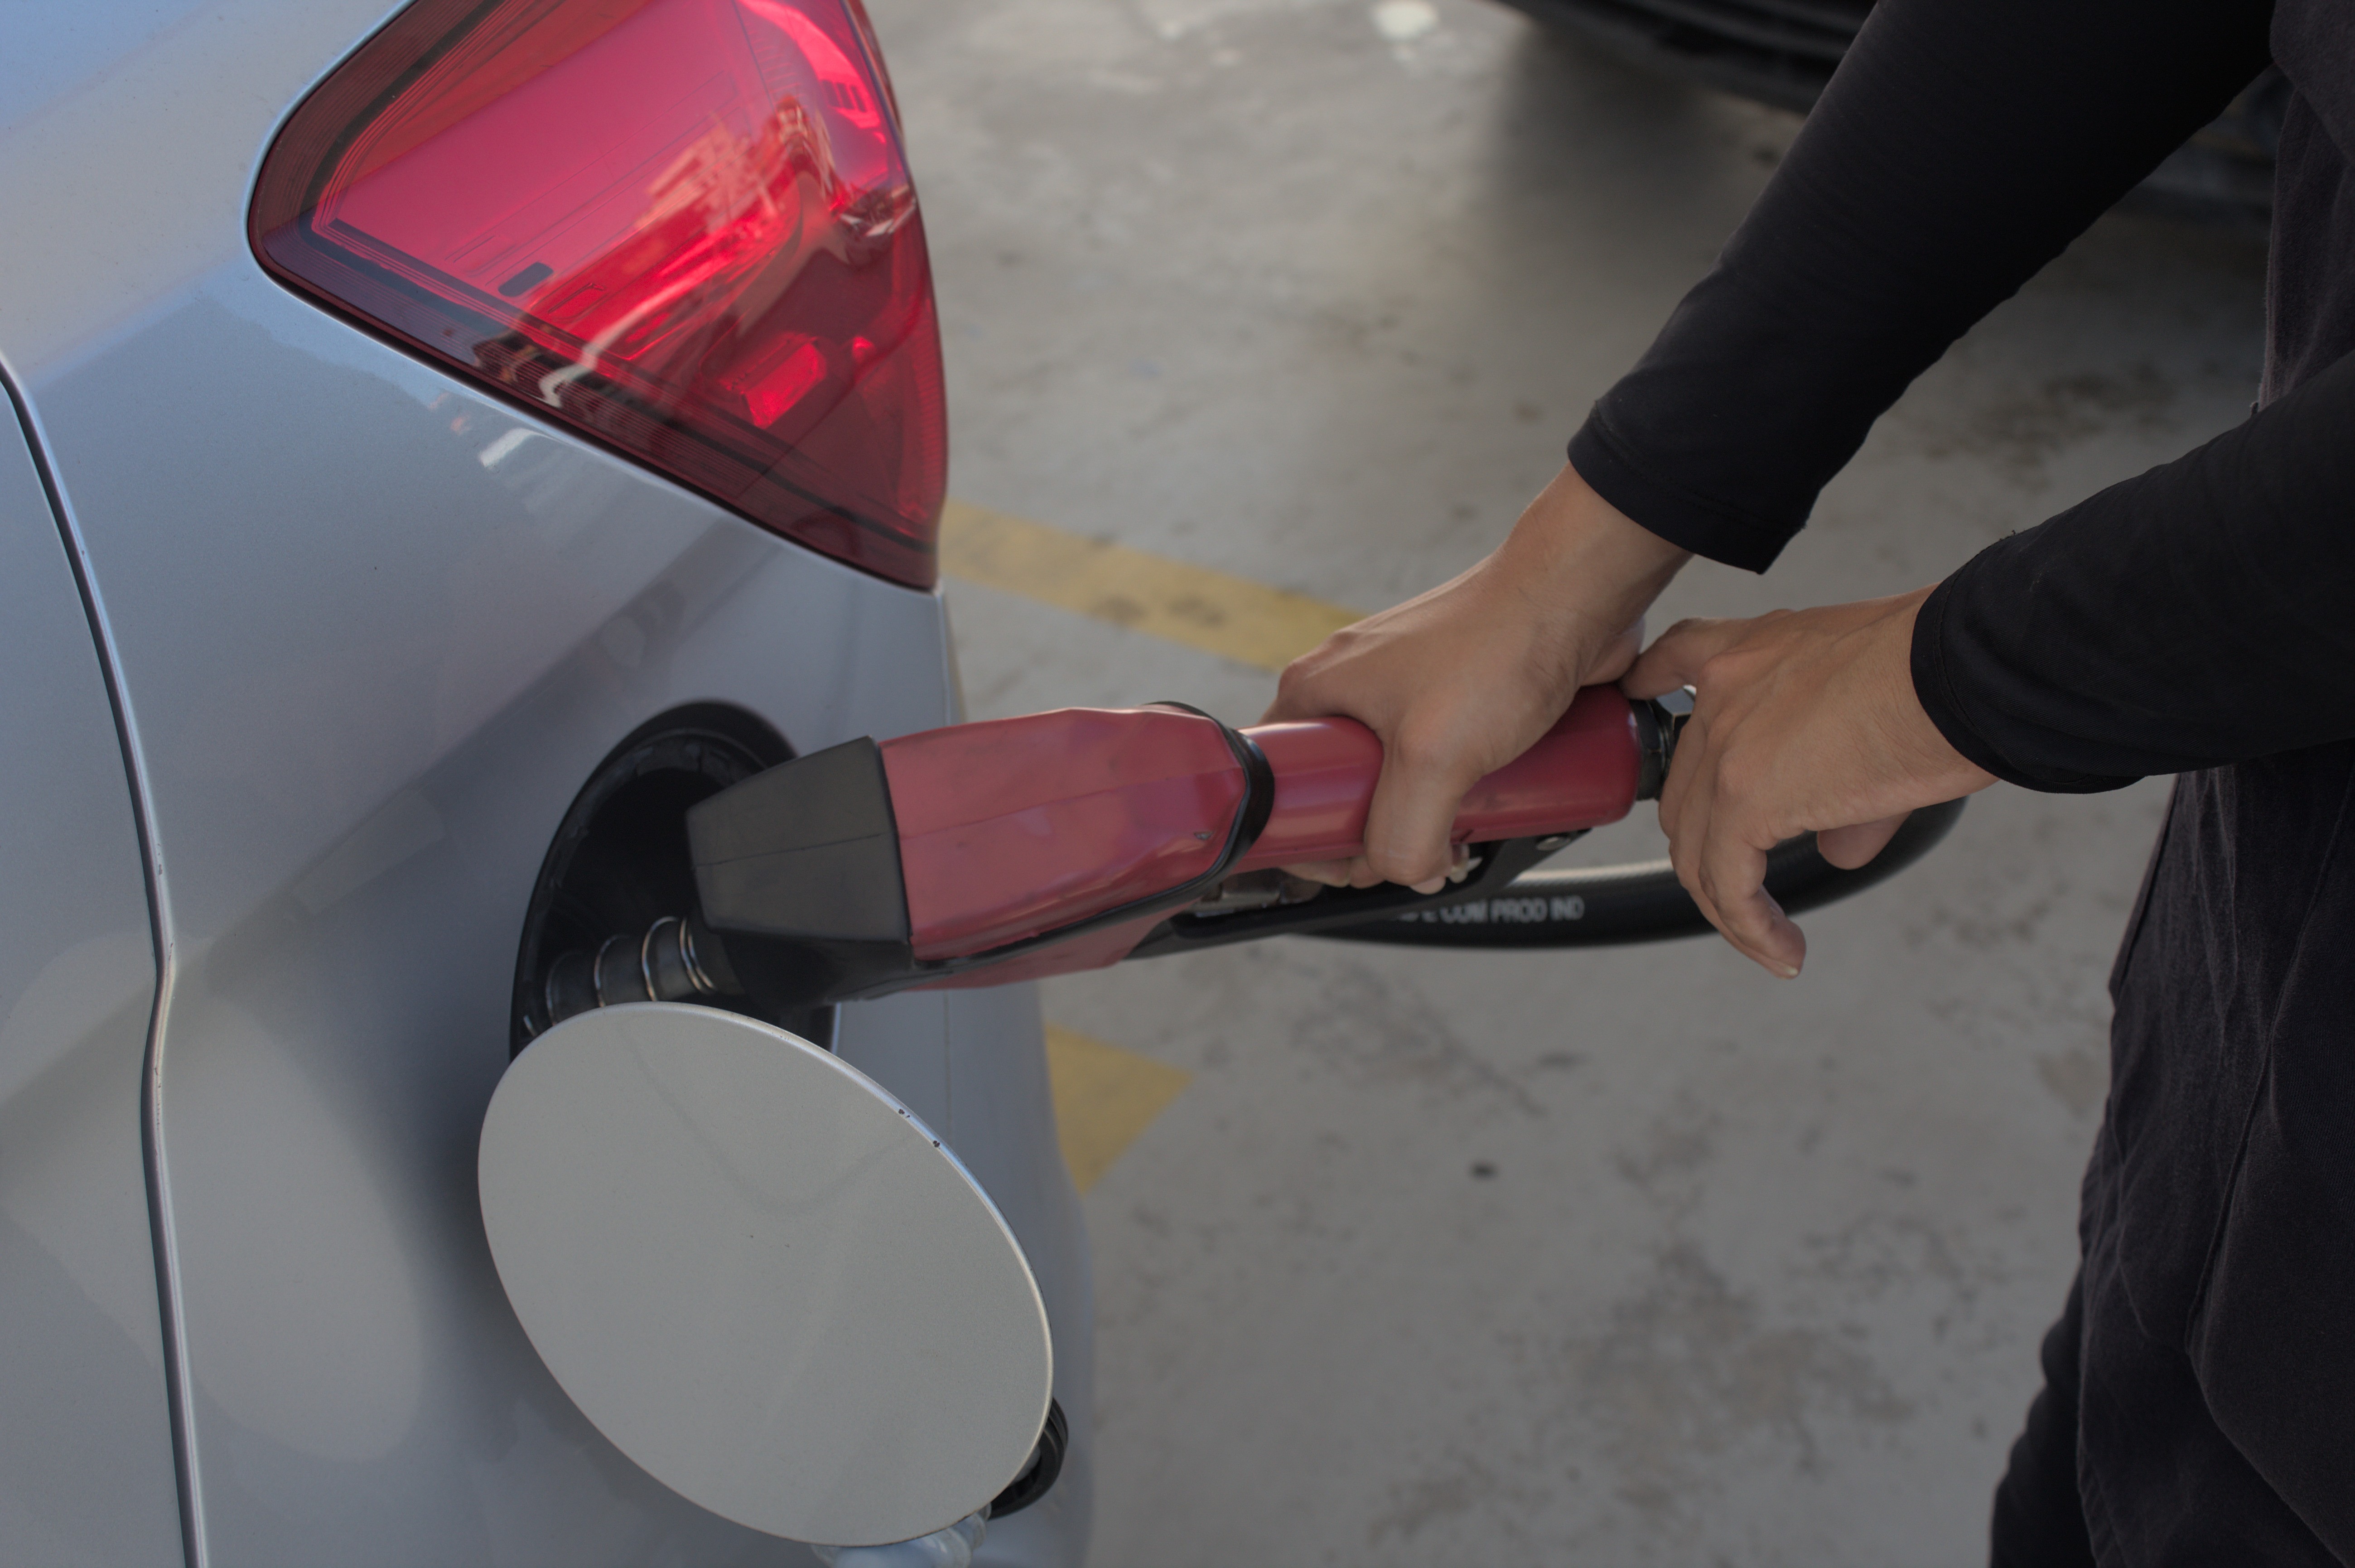 Acelen anuncia aumento de 13% no preço da gasolina vendida para distribuidoras na BA